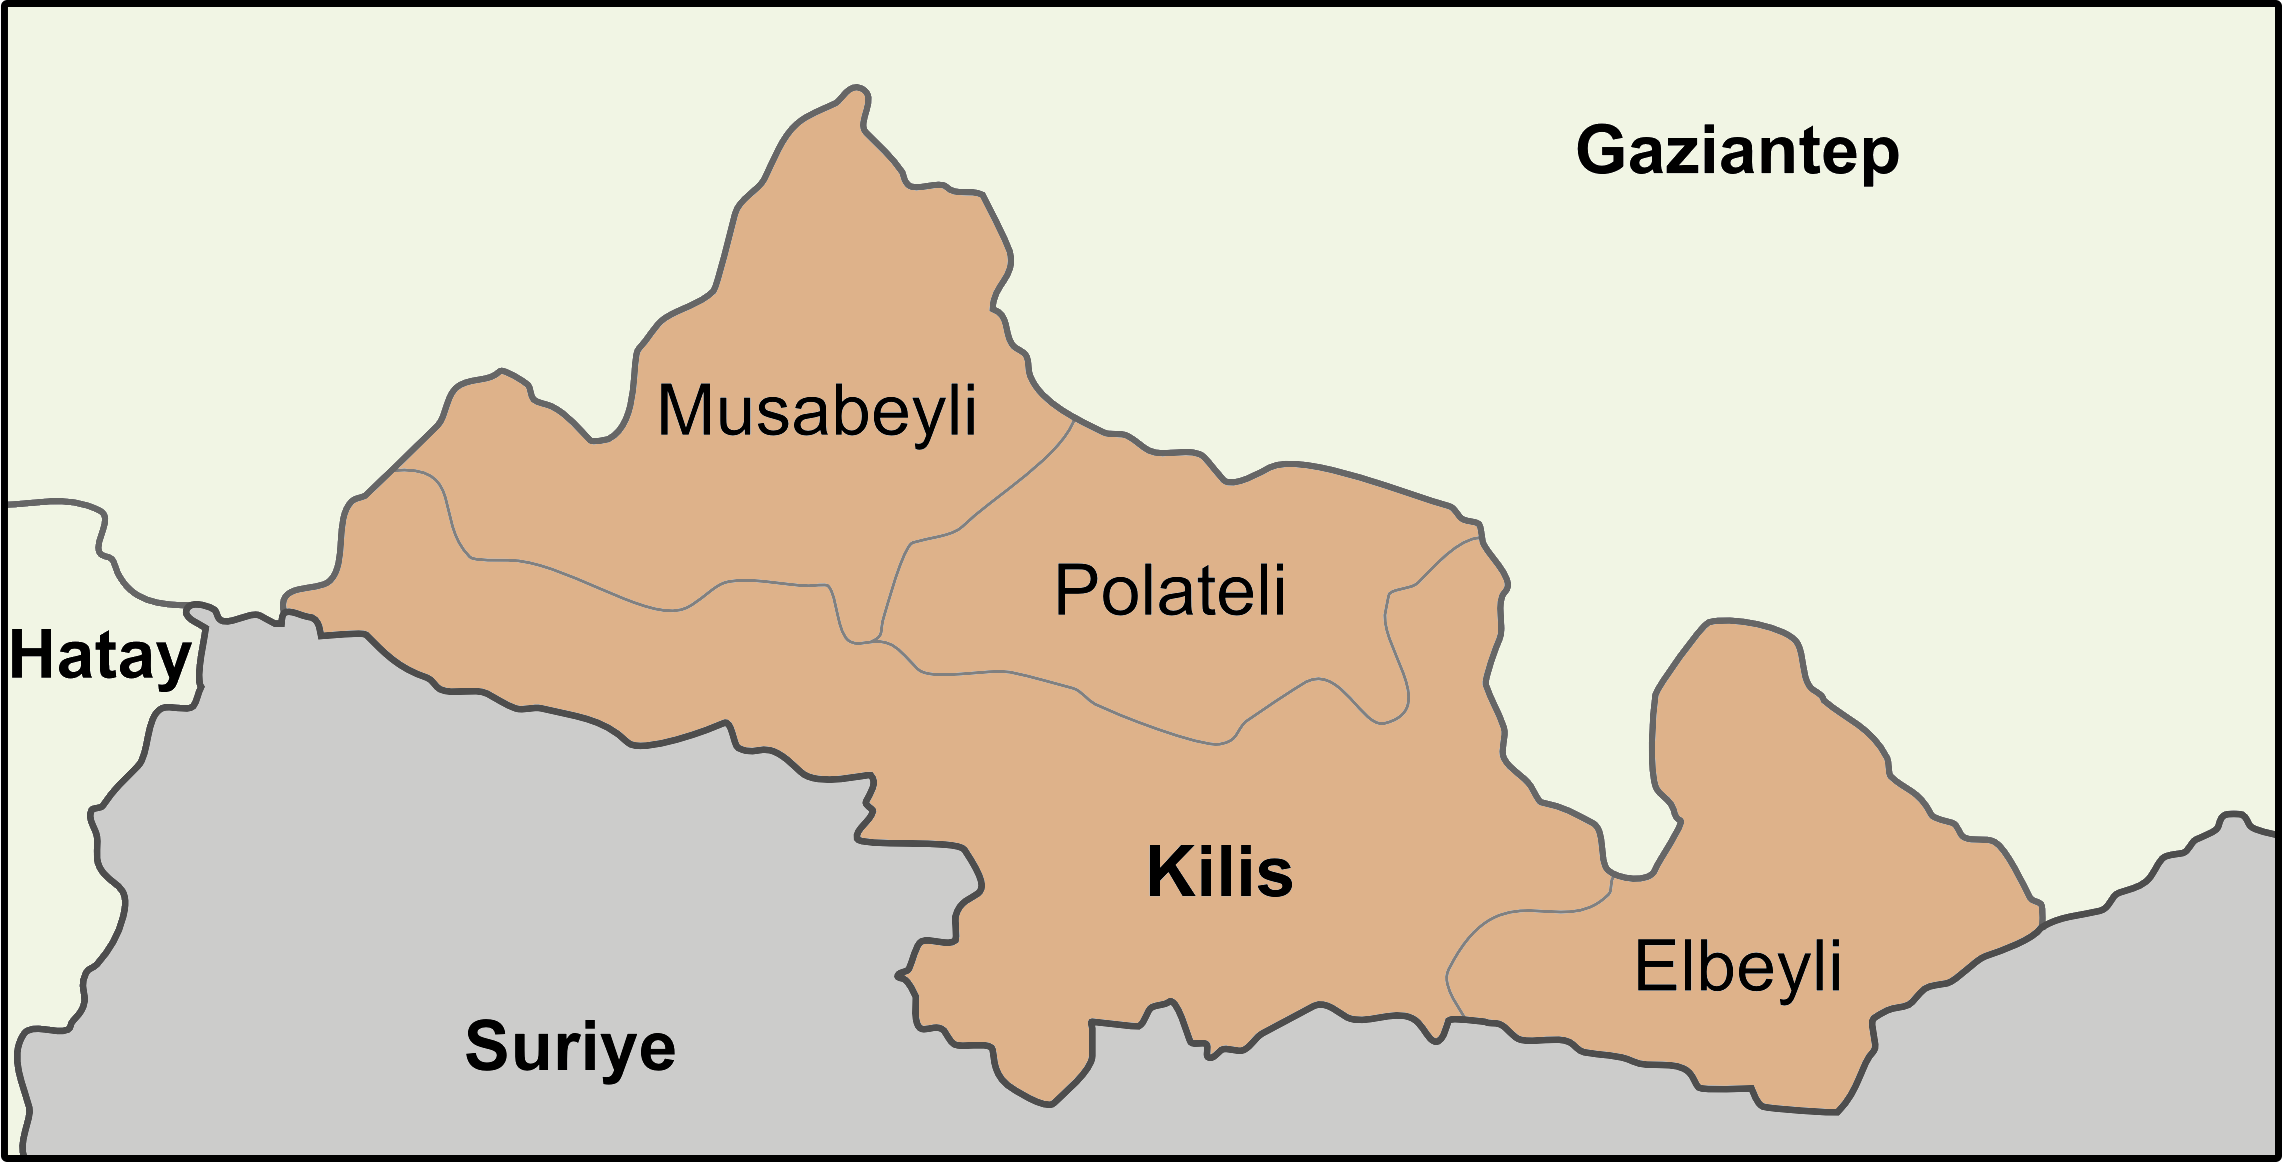 KİLİS (Tüm bölgeler)